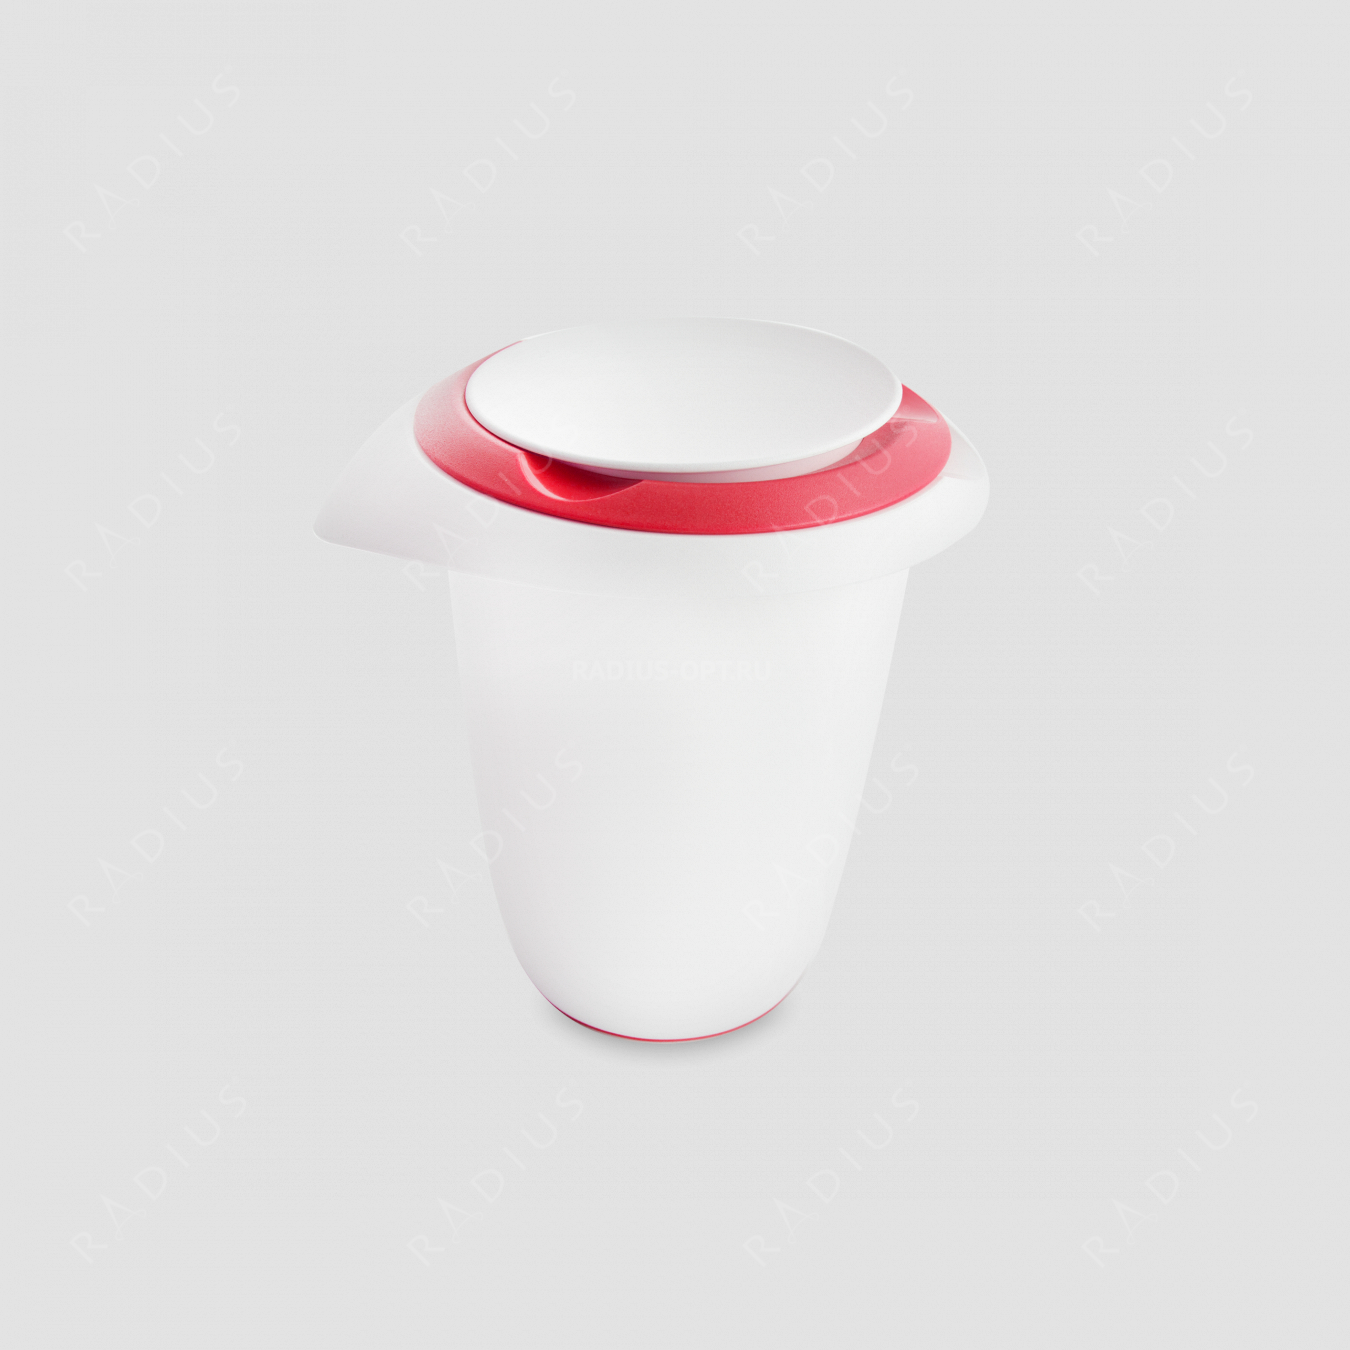 Чаша для смешивания, 1л, двойная крышка (красная) от брызг, нескользящее дно, пластик, серия Baking, Westmark, Германия